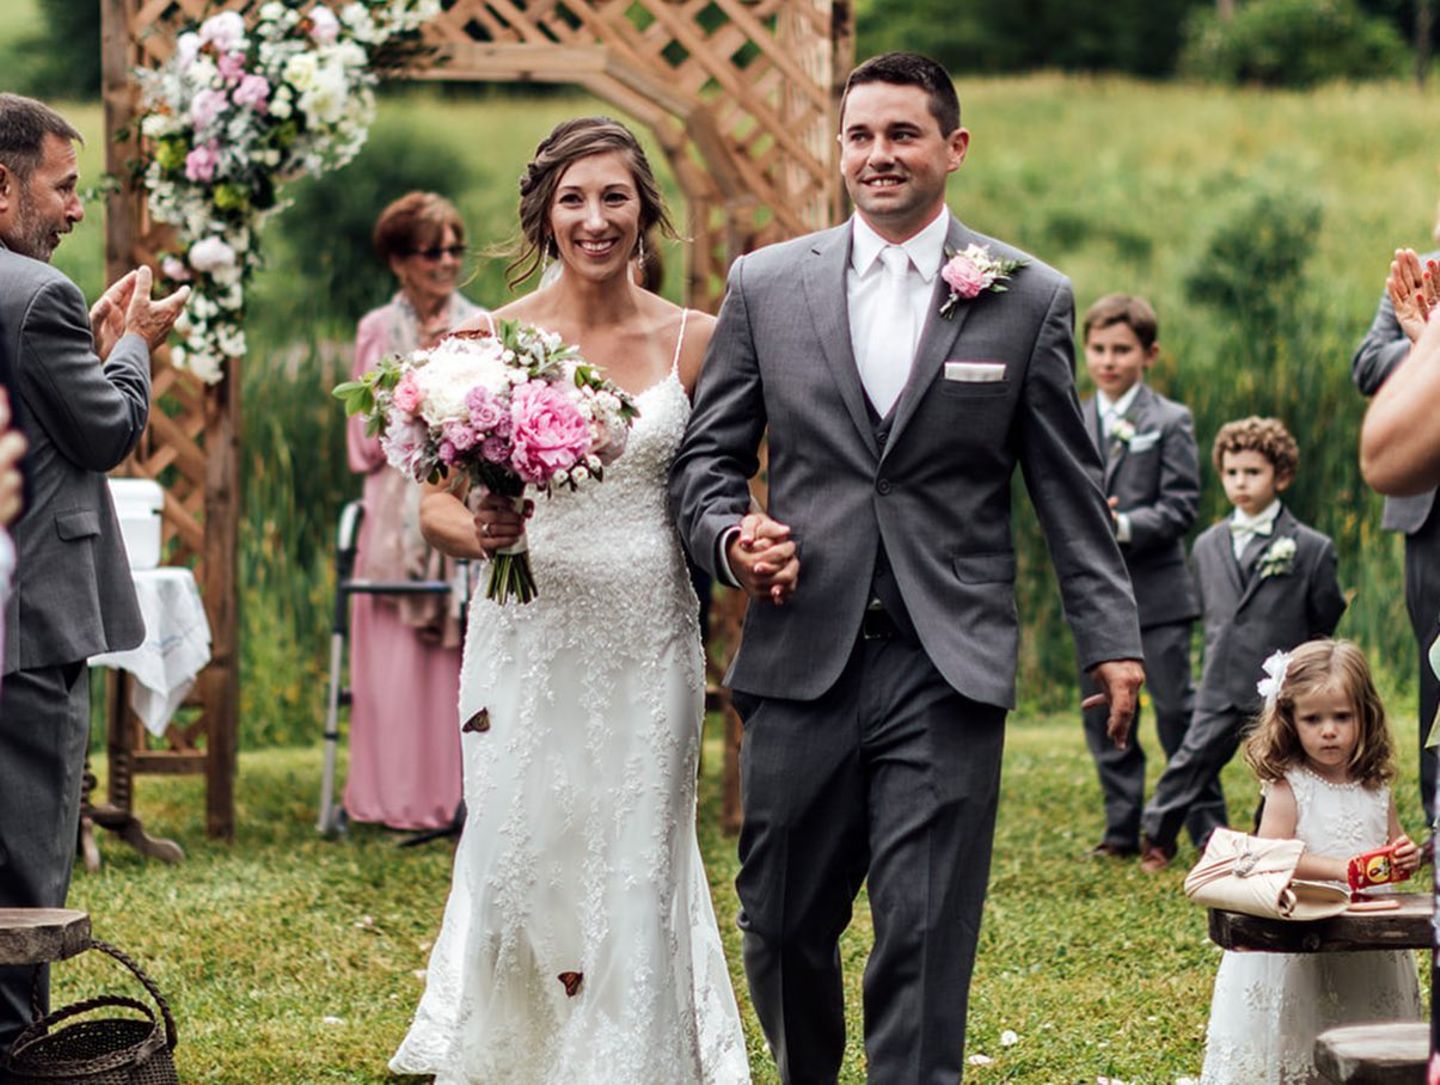 Pennsylvania: Schmetterlinge rühren bei Hochzeit zu Tränen: Das Brautpaar auf dem Weg zur Trauung